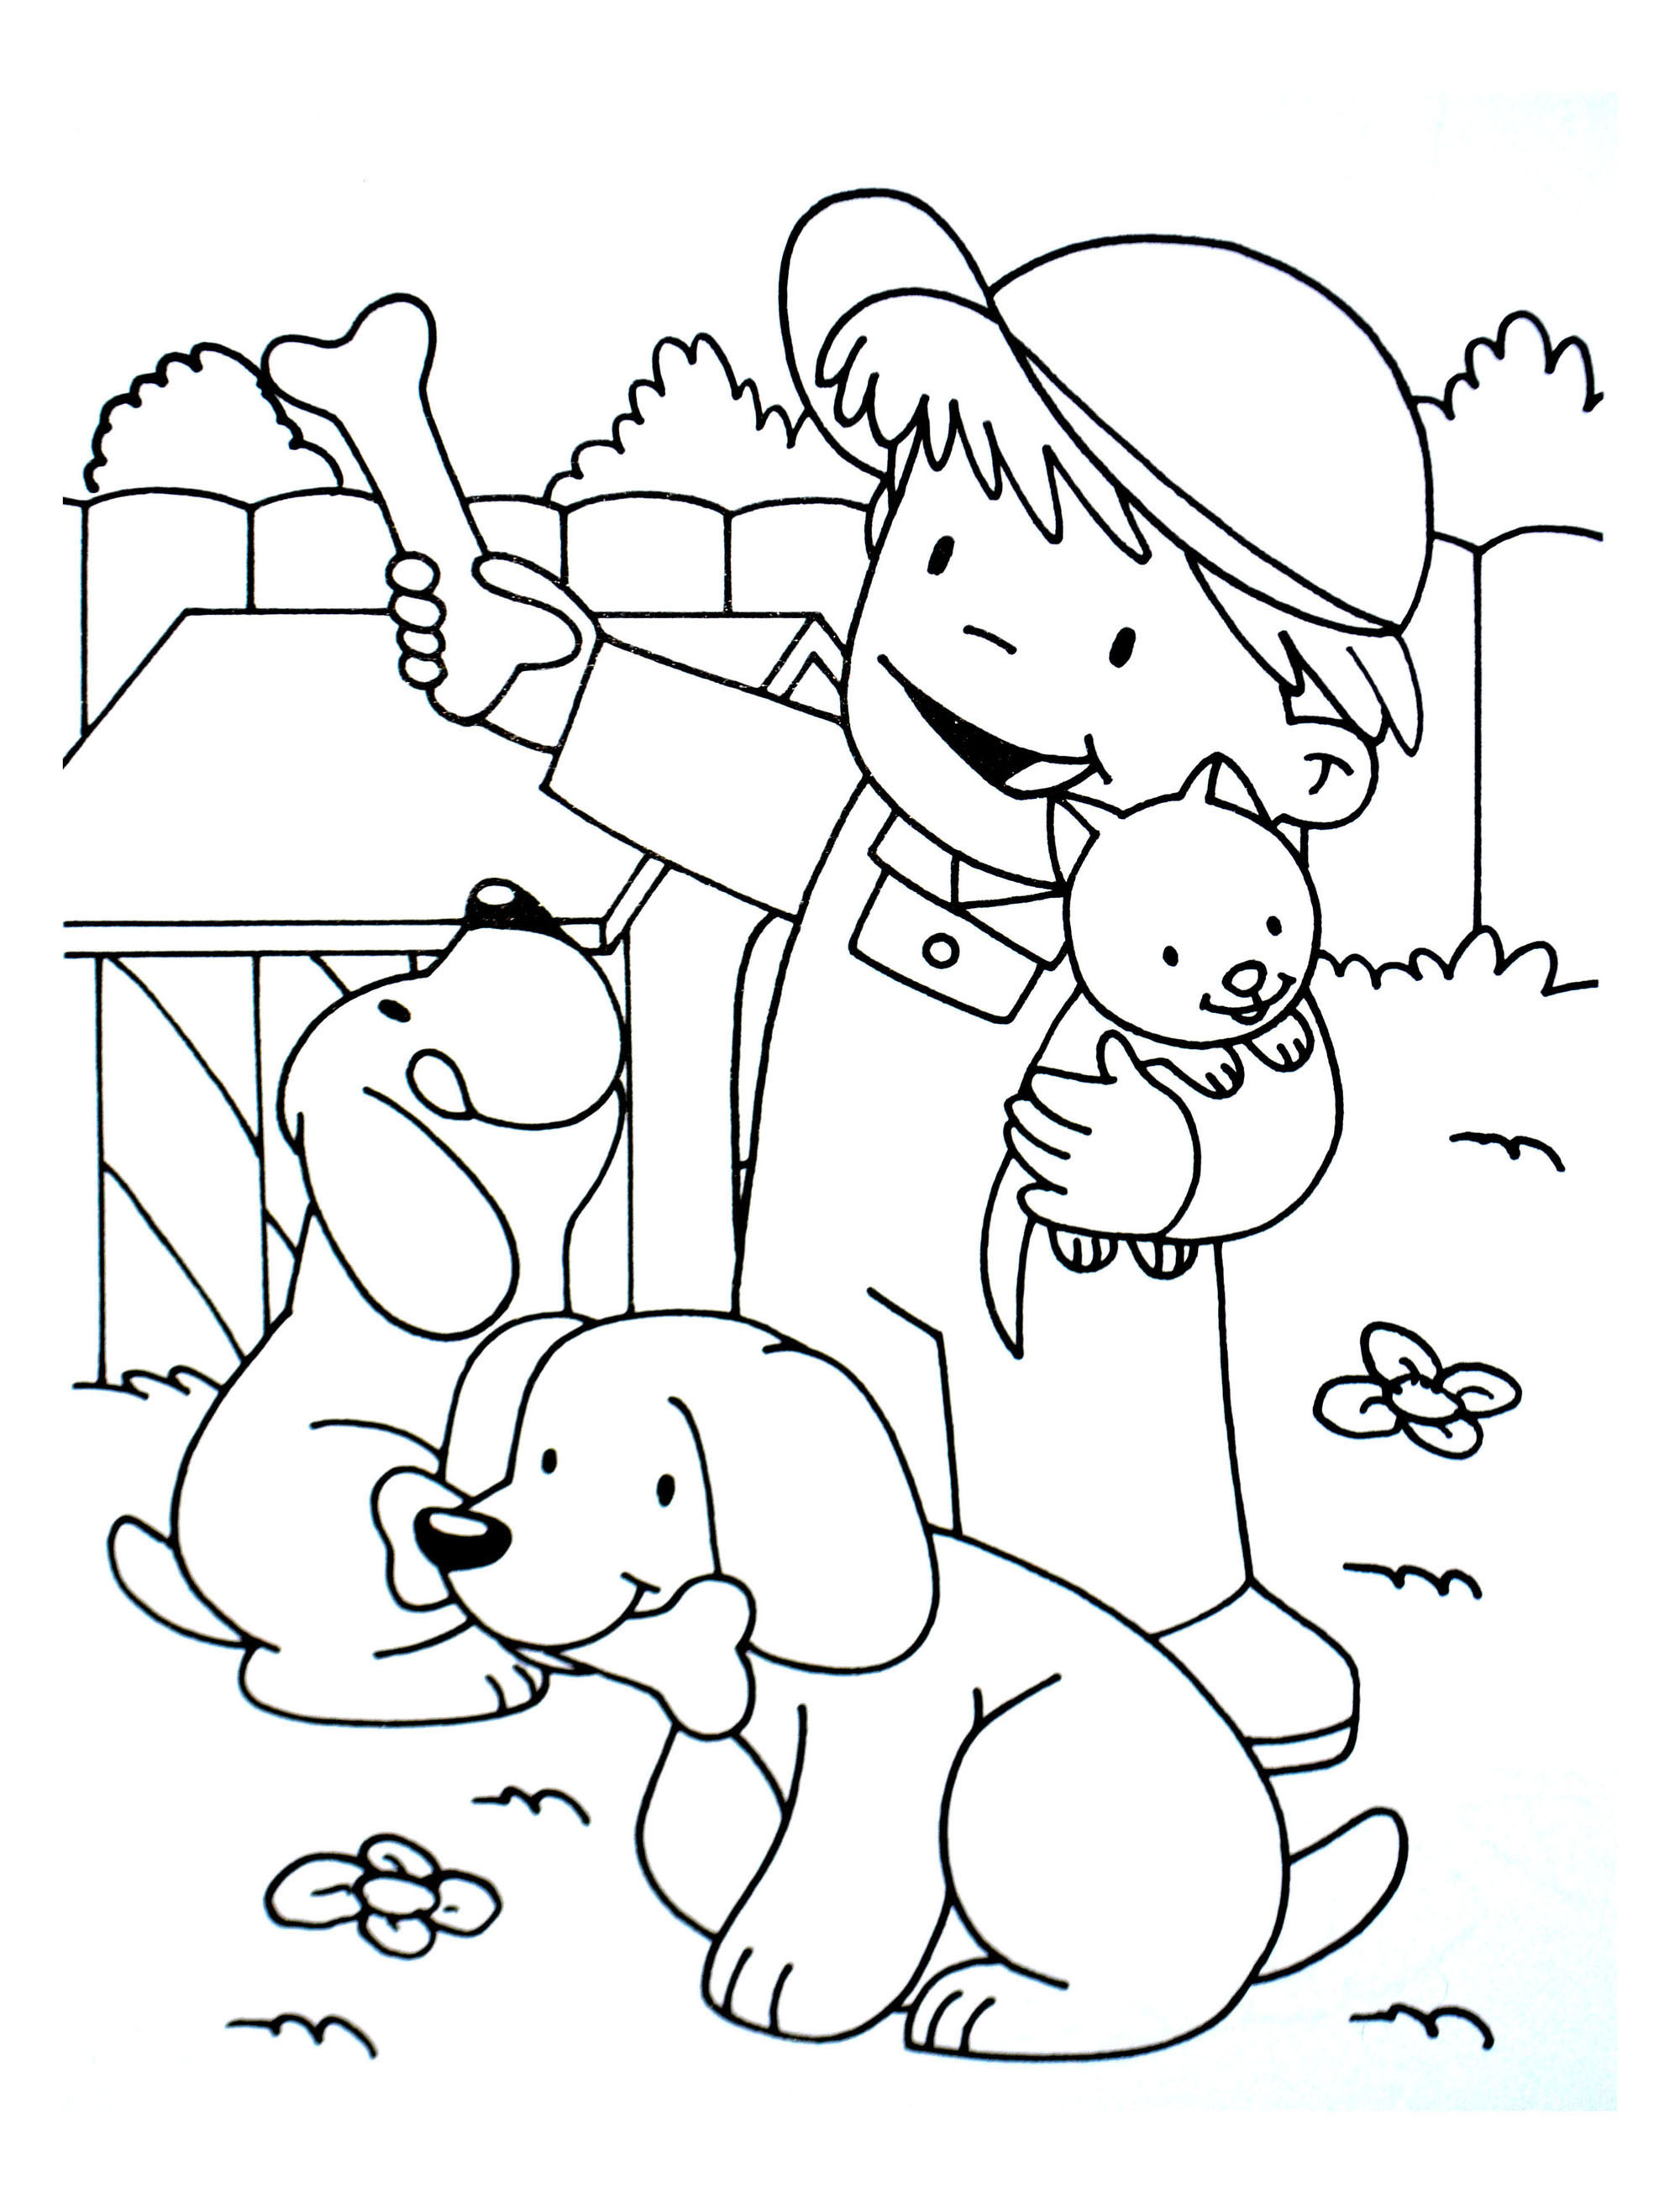 Descarga e imprime un dibujo de perro para niños